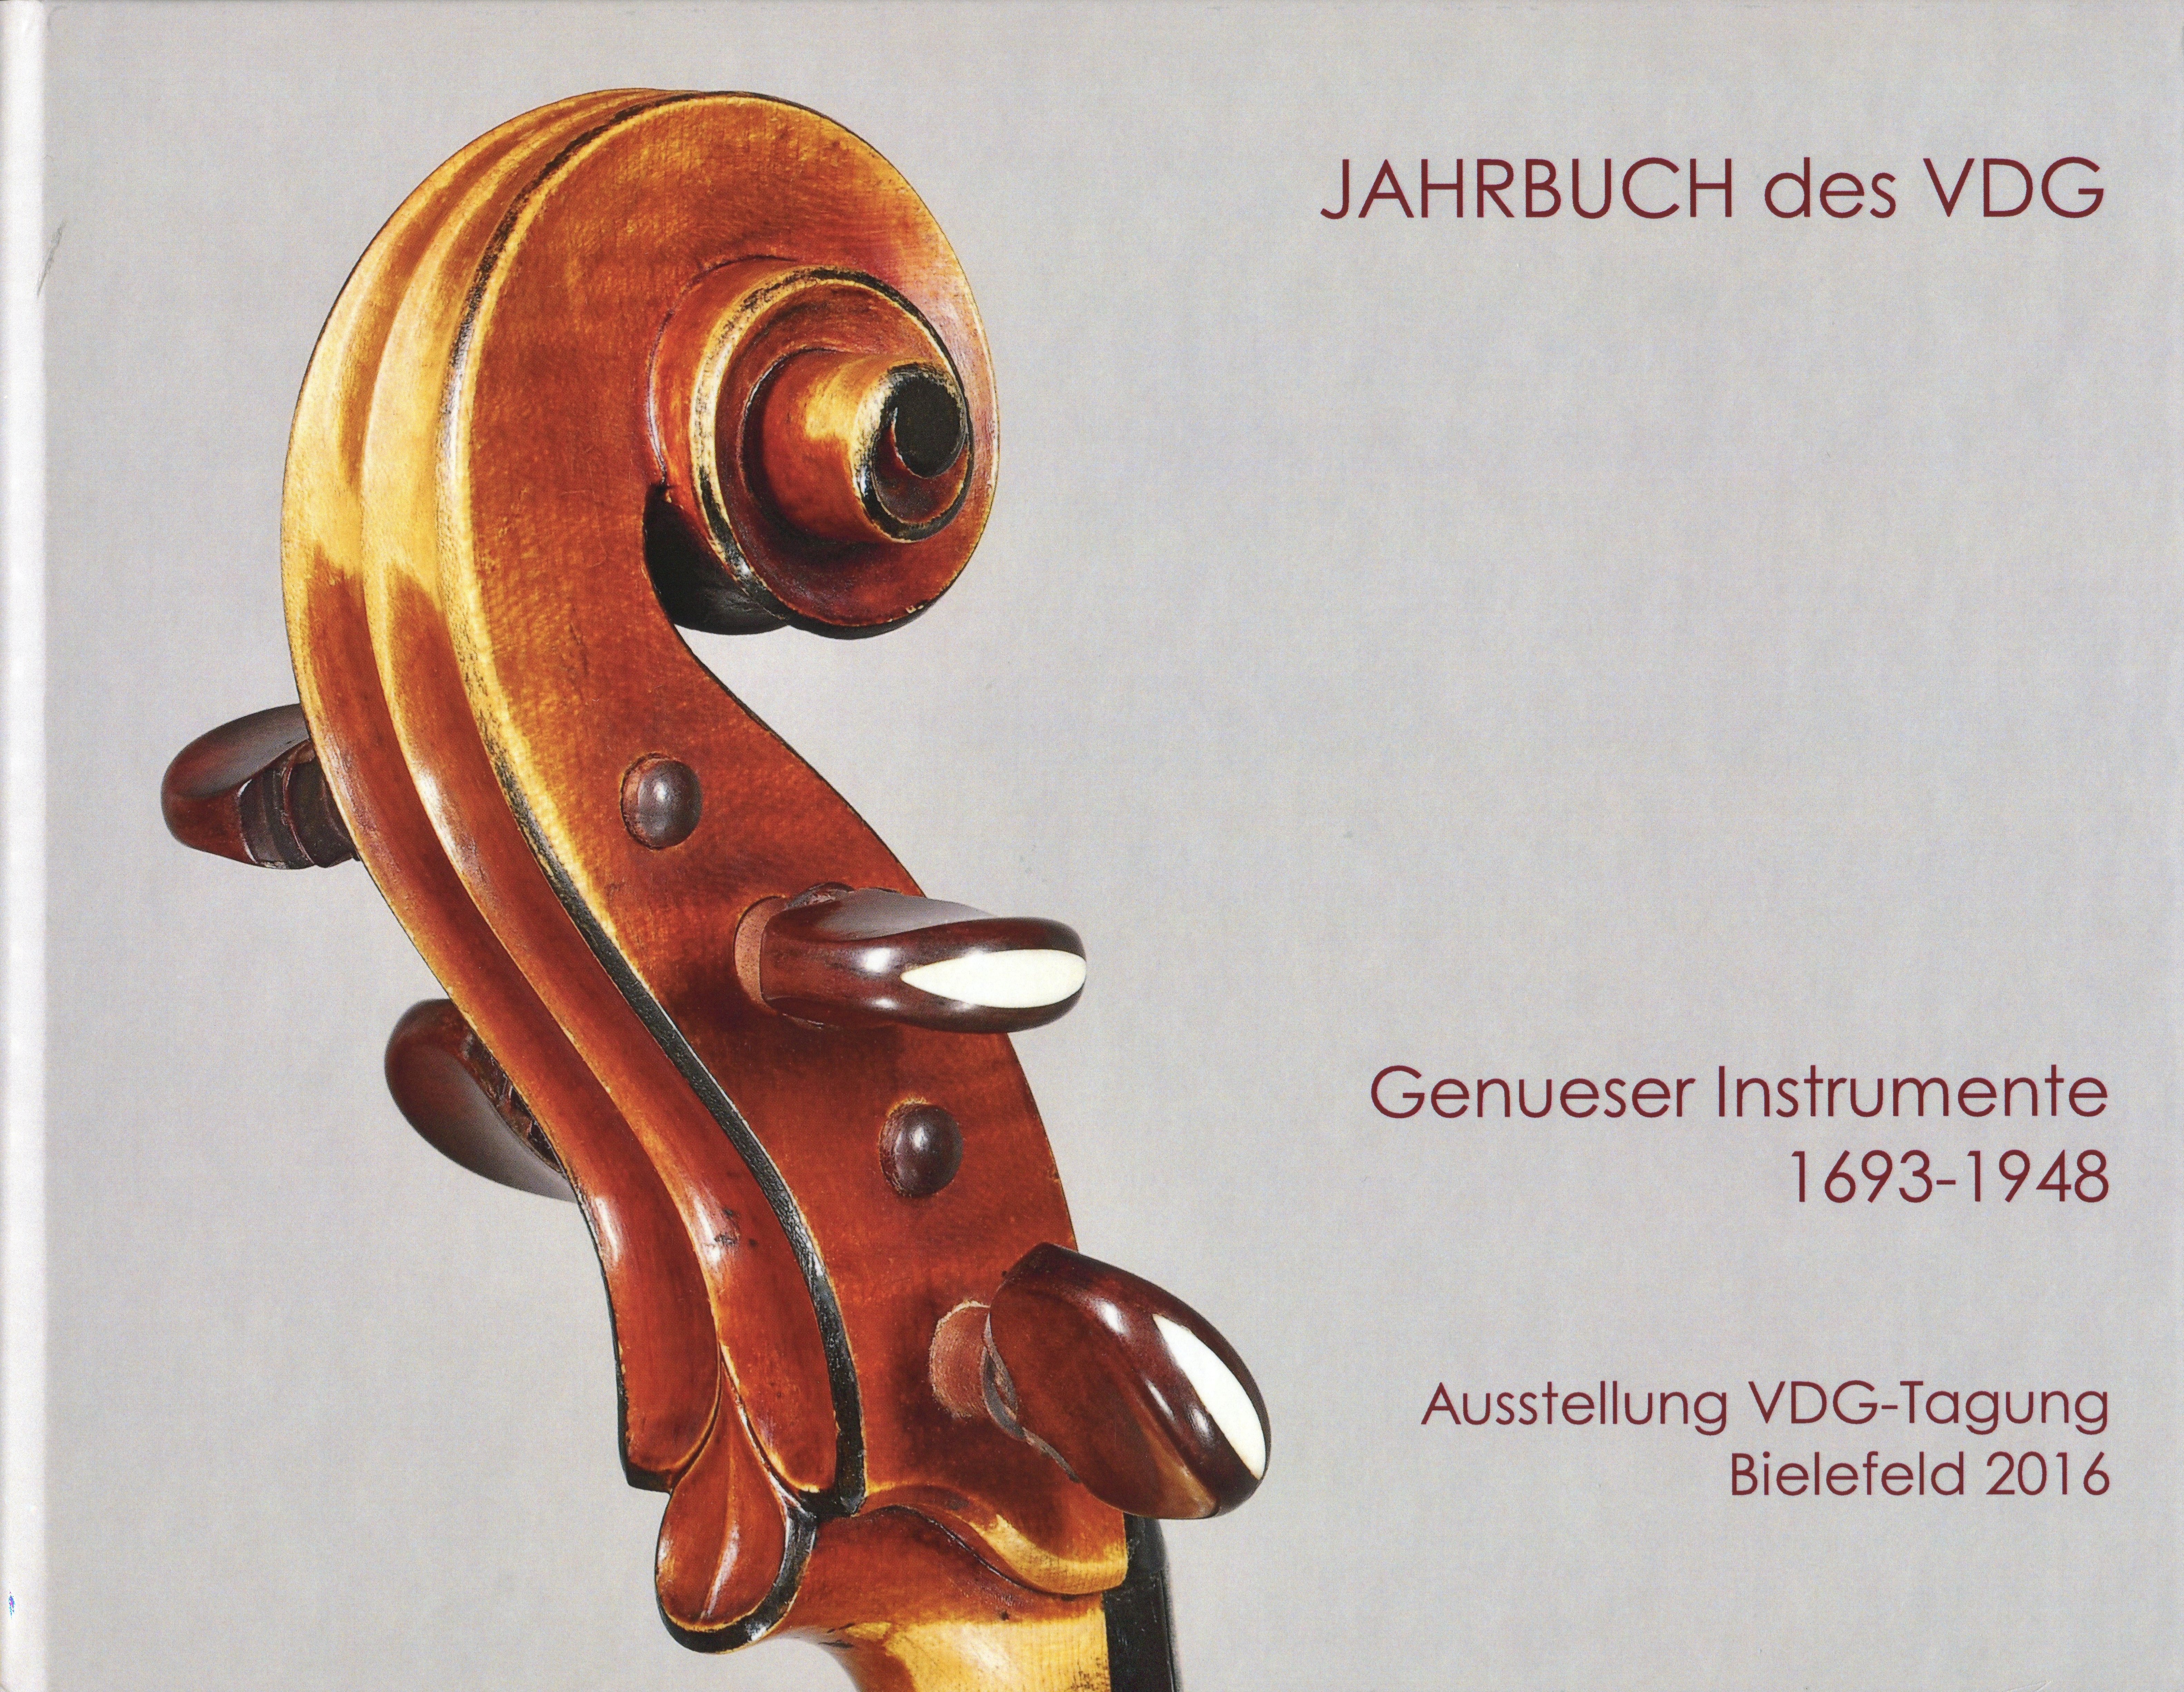 VDG: Genueser Instrumente 1693-1948 Ausstellung 2016